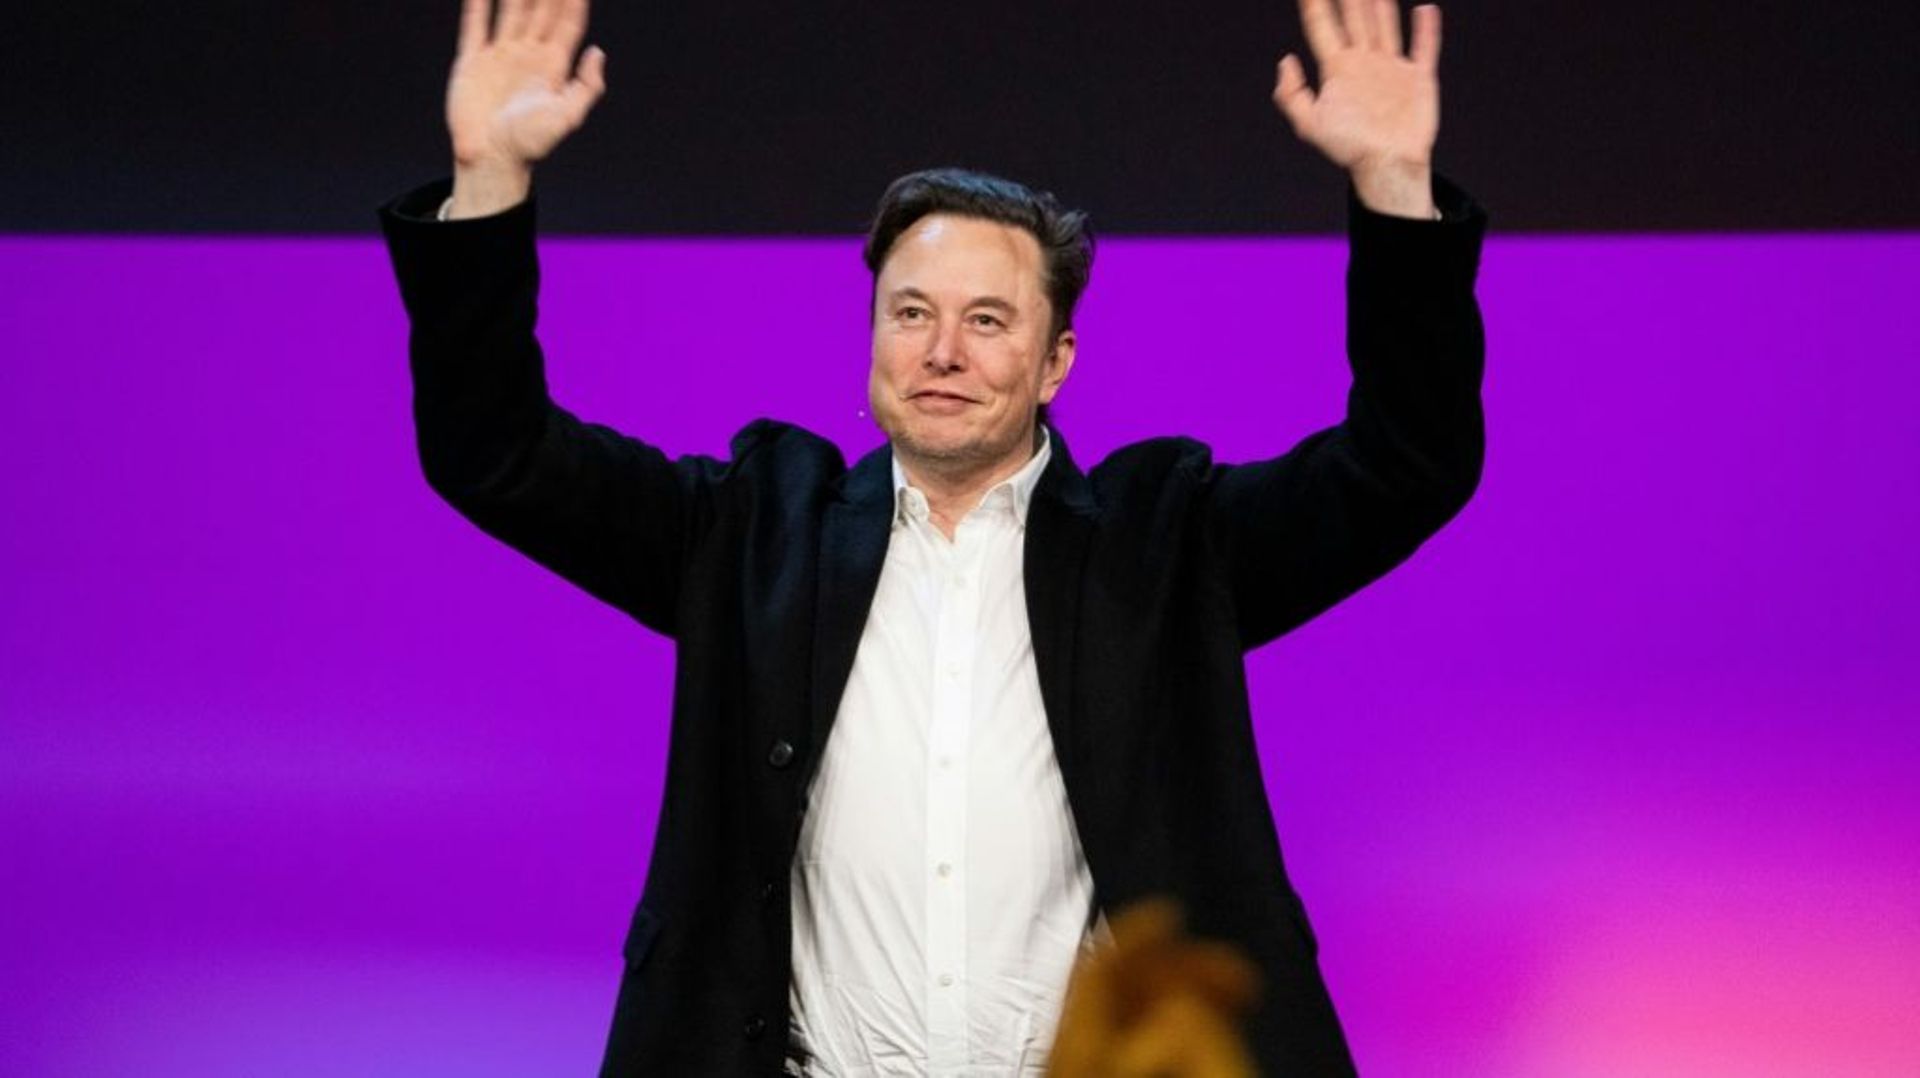 Elon Musk sur la scène de la conférence TED2022 à Vancouver (Canada) le 14 avril 2022